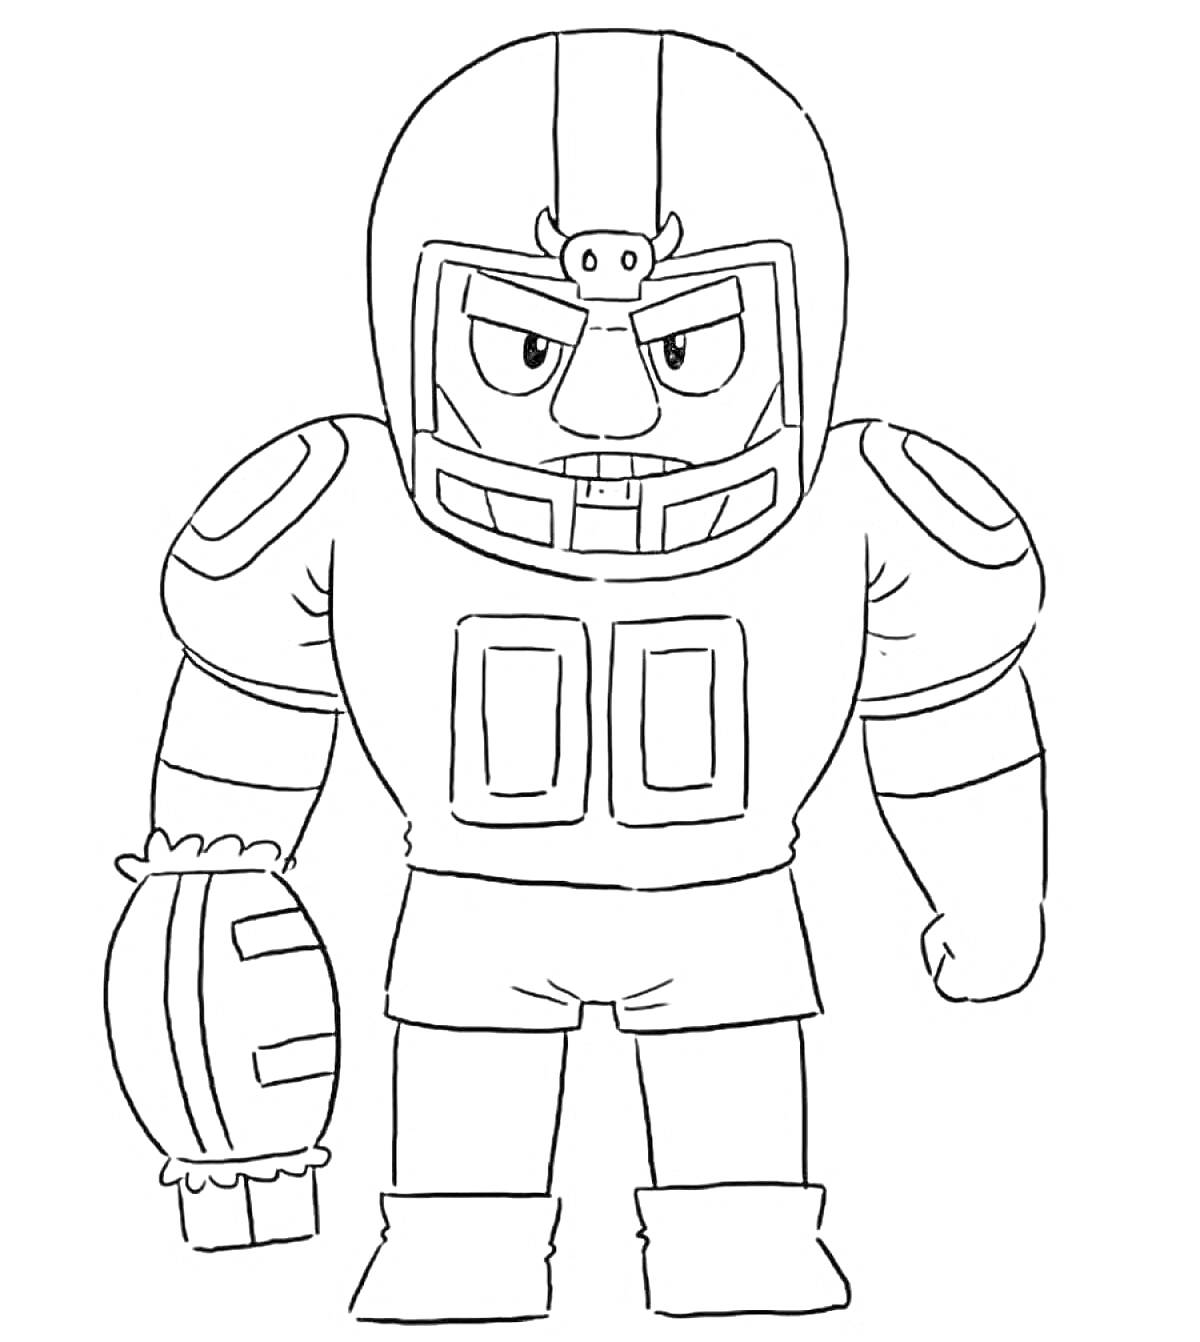 Раскраска Браво Старс, персонаж в футбольной форме, с защитным шлемом, рукавом и перчаткой